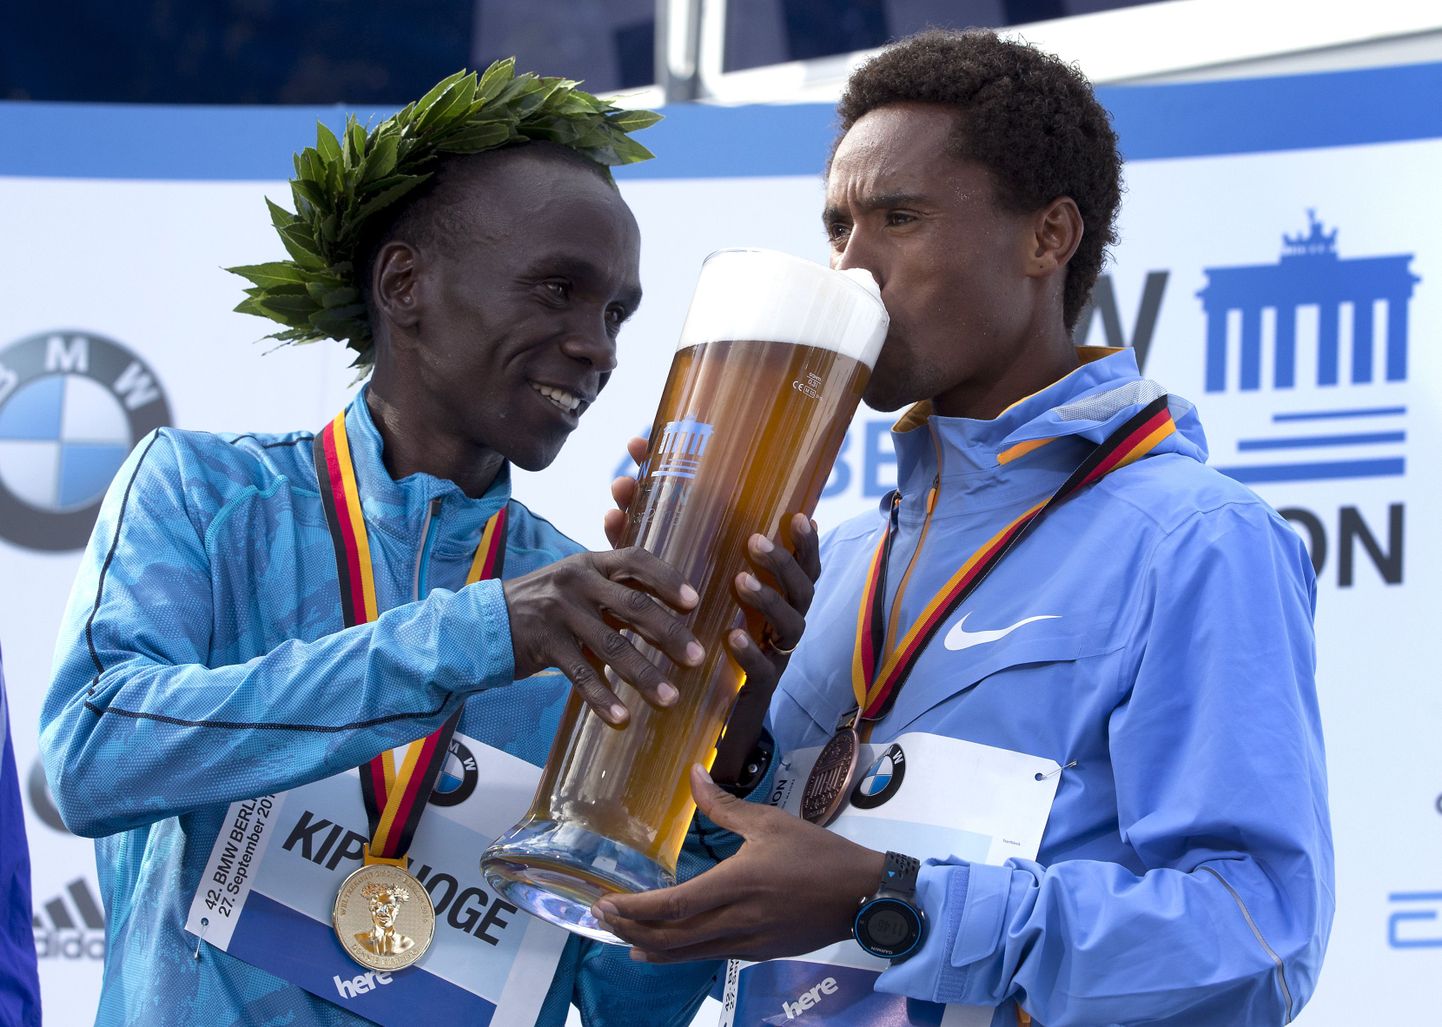 Berliini maratoni võitja Eliud Kipchoge (vasakul) aitab kolmanda koha mehel Feyisa Lilesal kummutada traditsioonilist õlleklaasi.